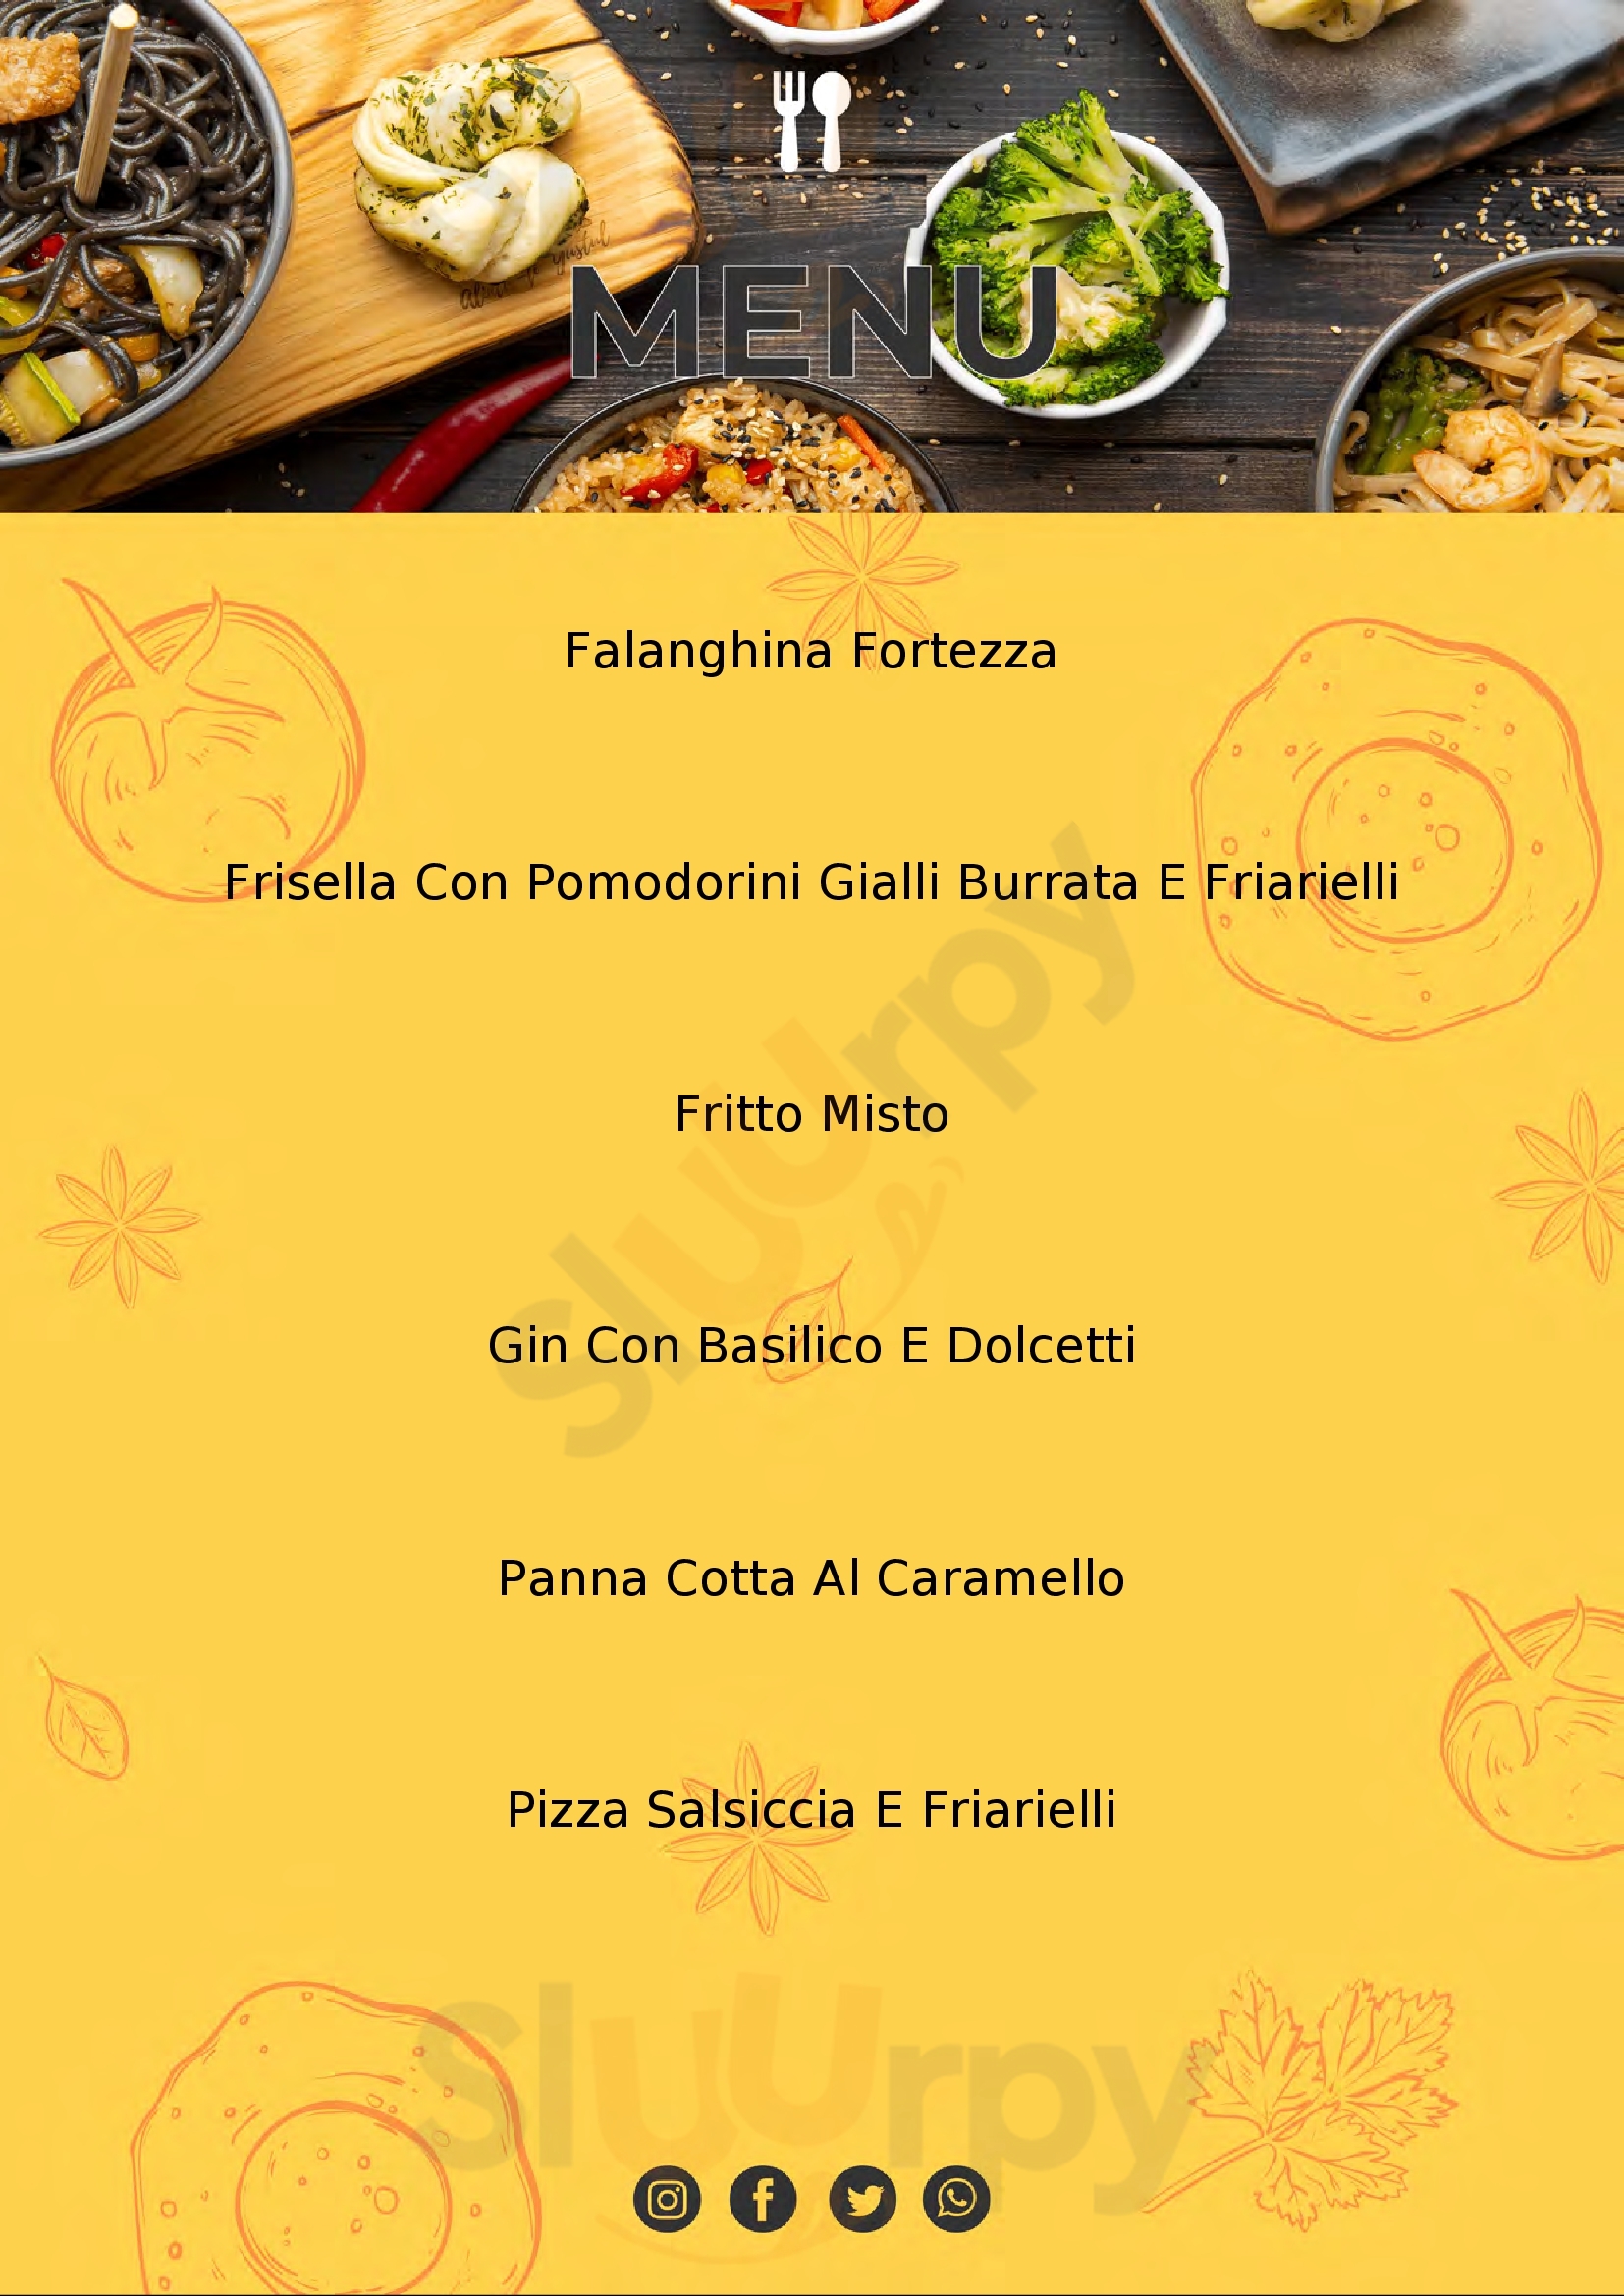 Pizzeria Modugno San Salvatore Monferrato menù 1 pagina